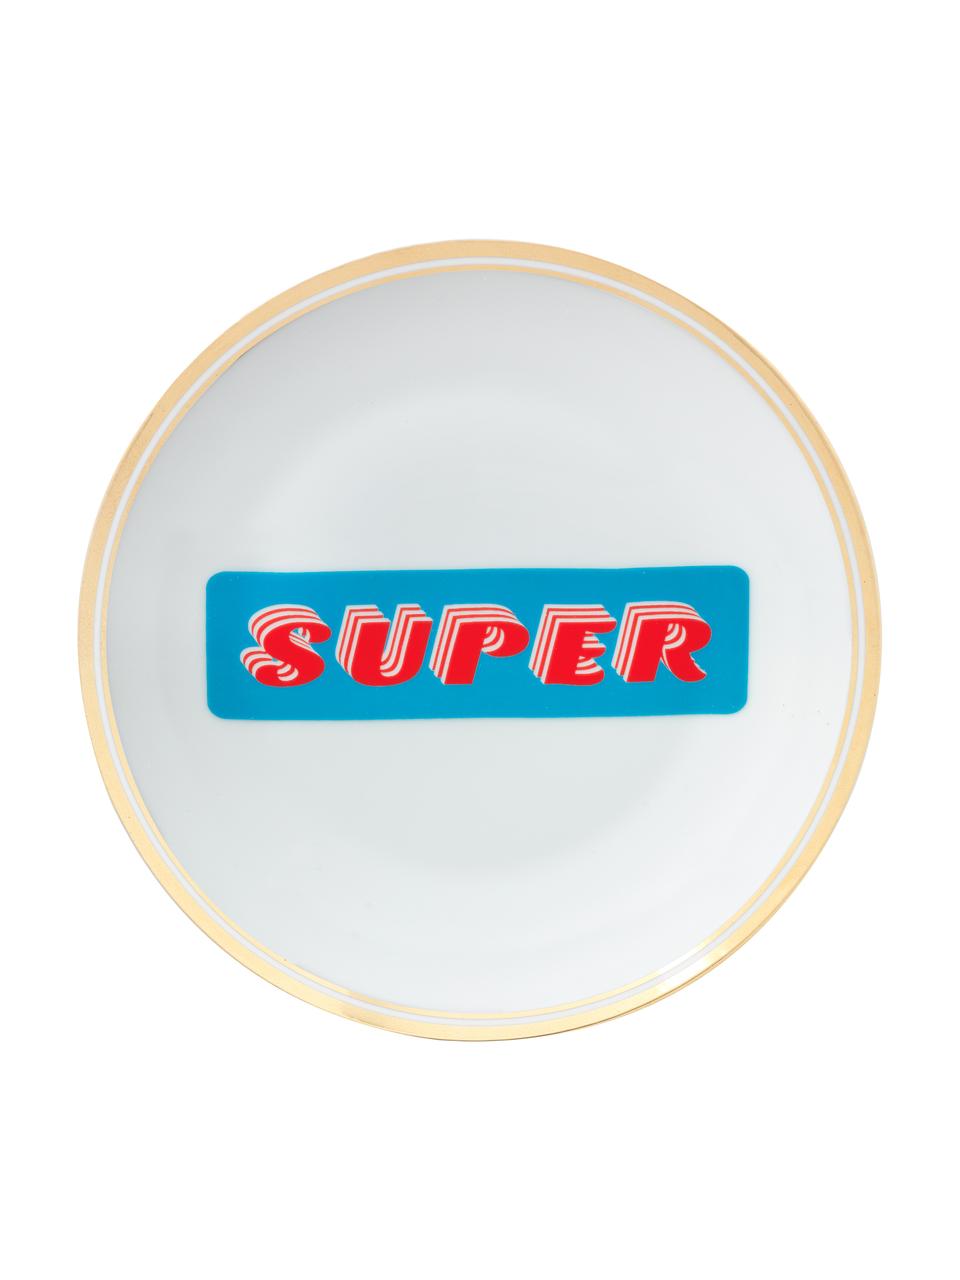 Piatto colazione in porcellana con scritta Super, Porcellana, Super, Ø 17 cm